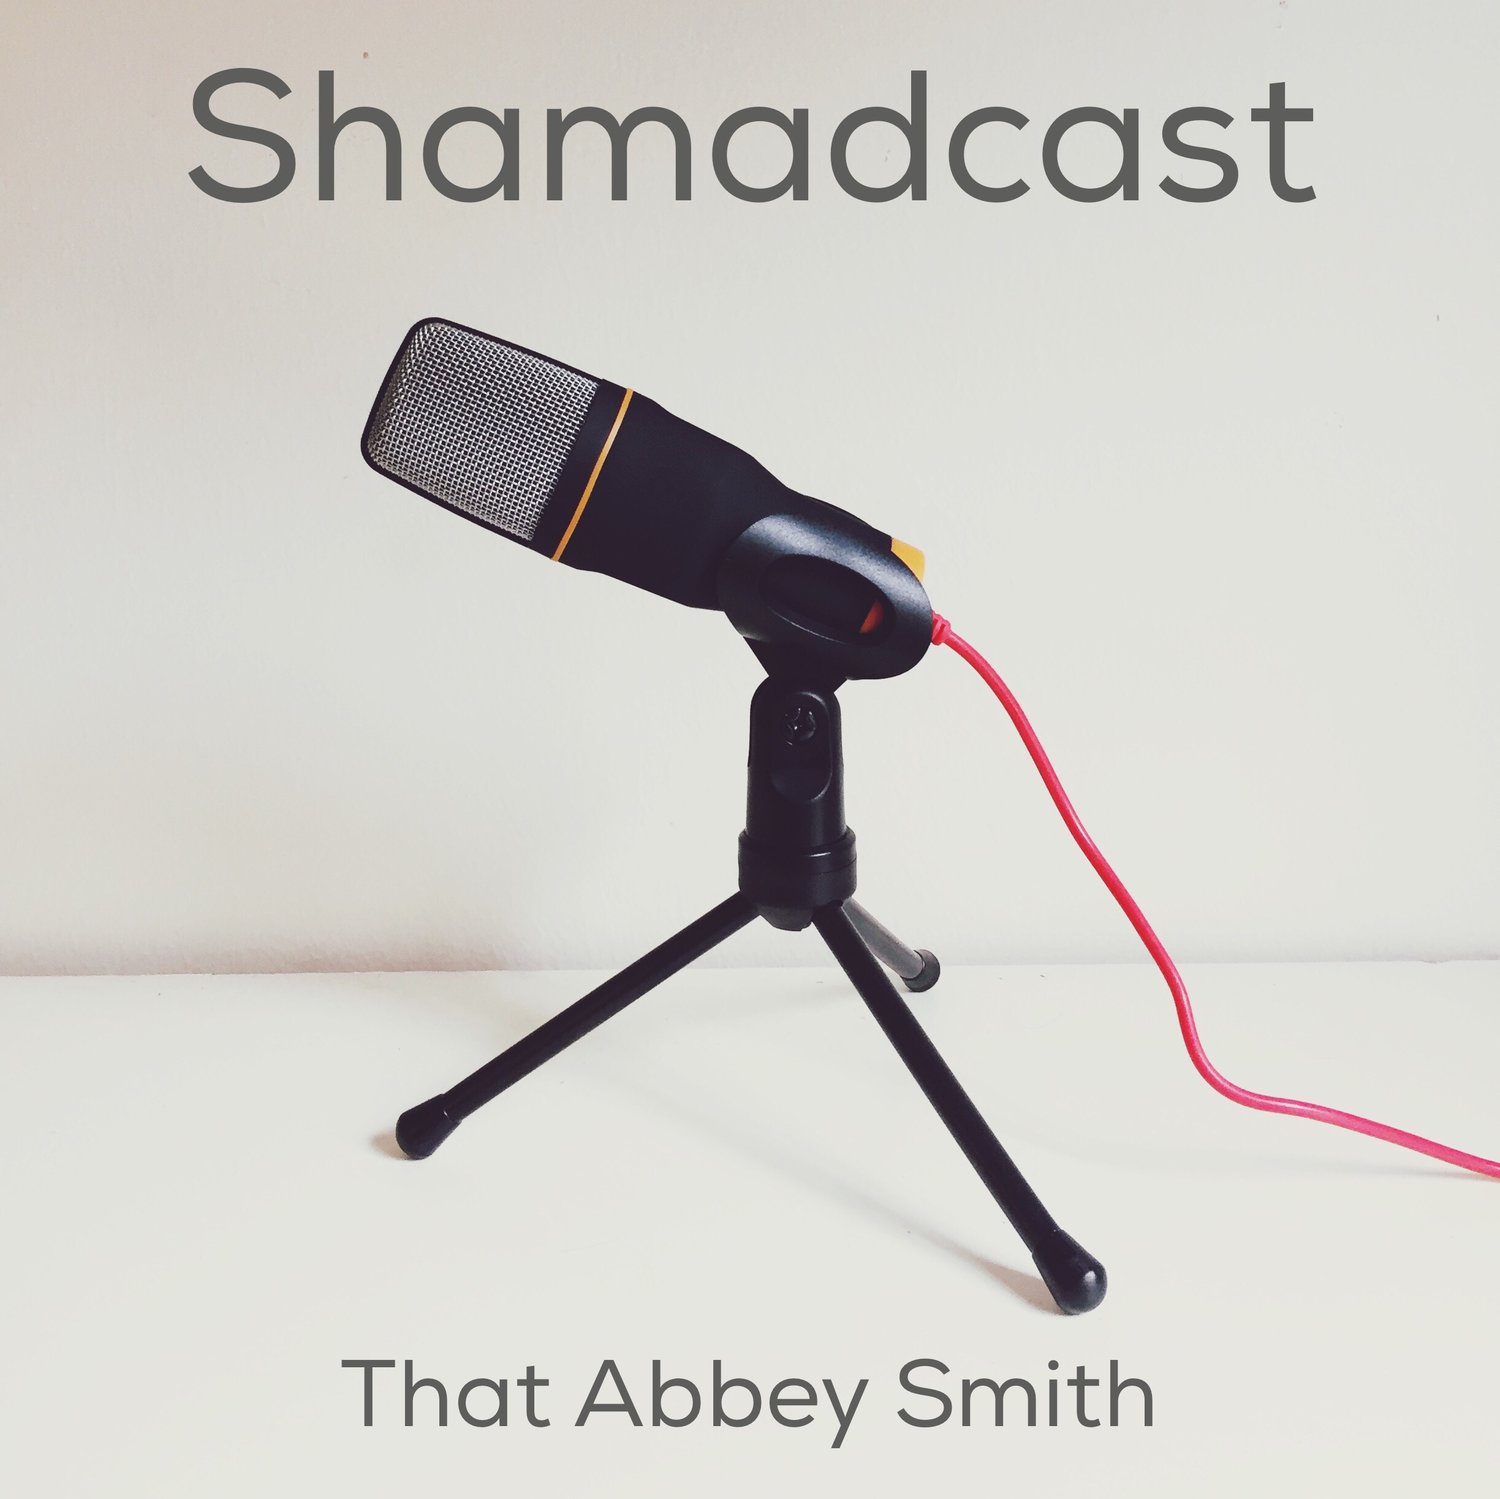 Shamadcast - Abbey Smith